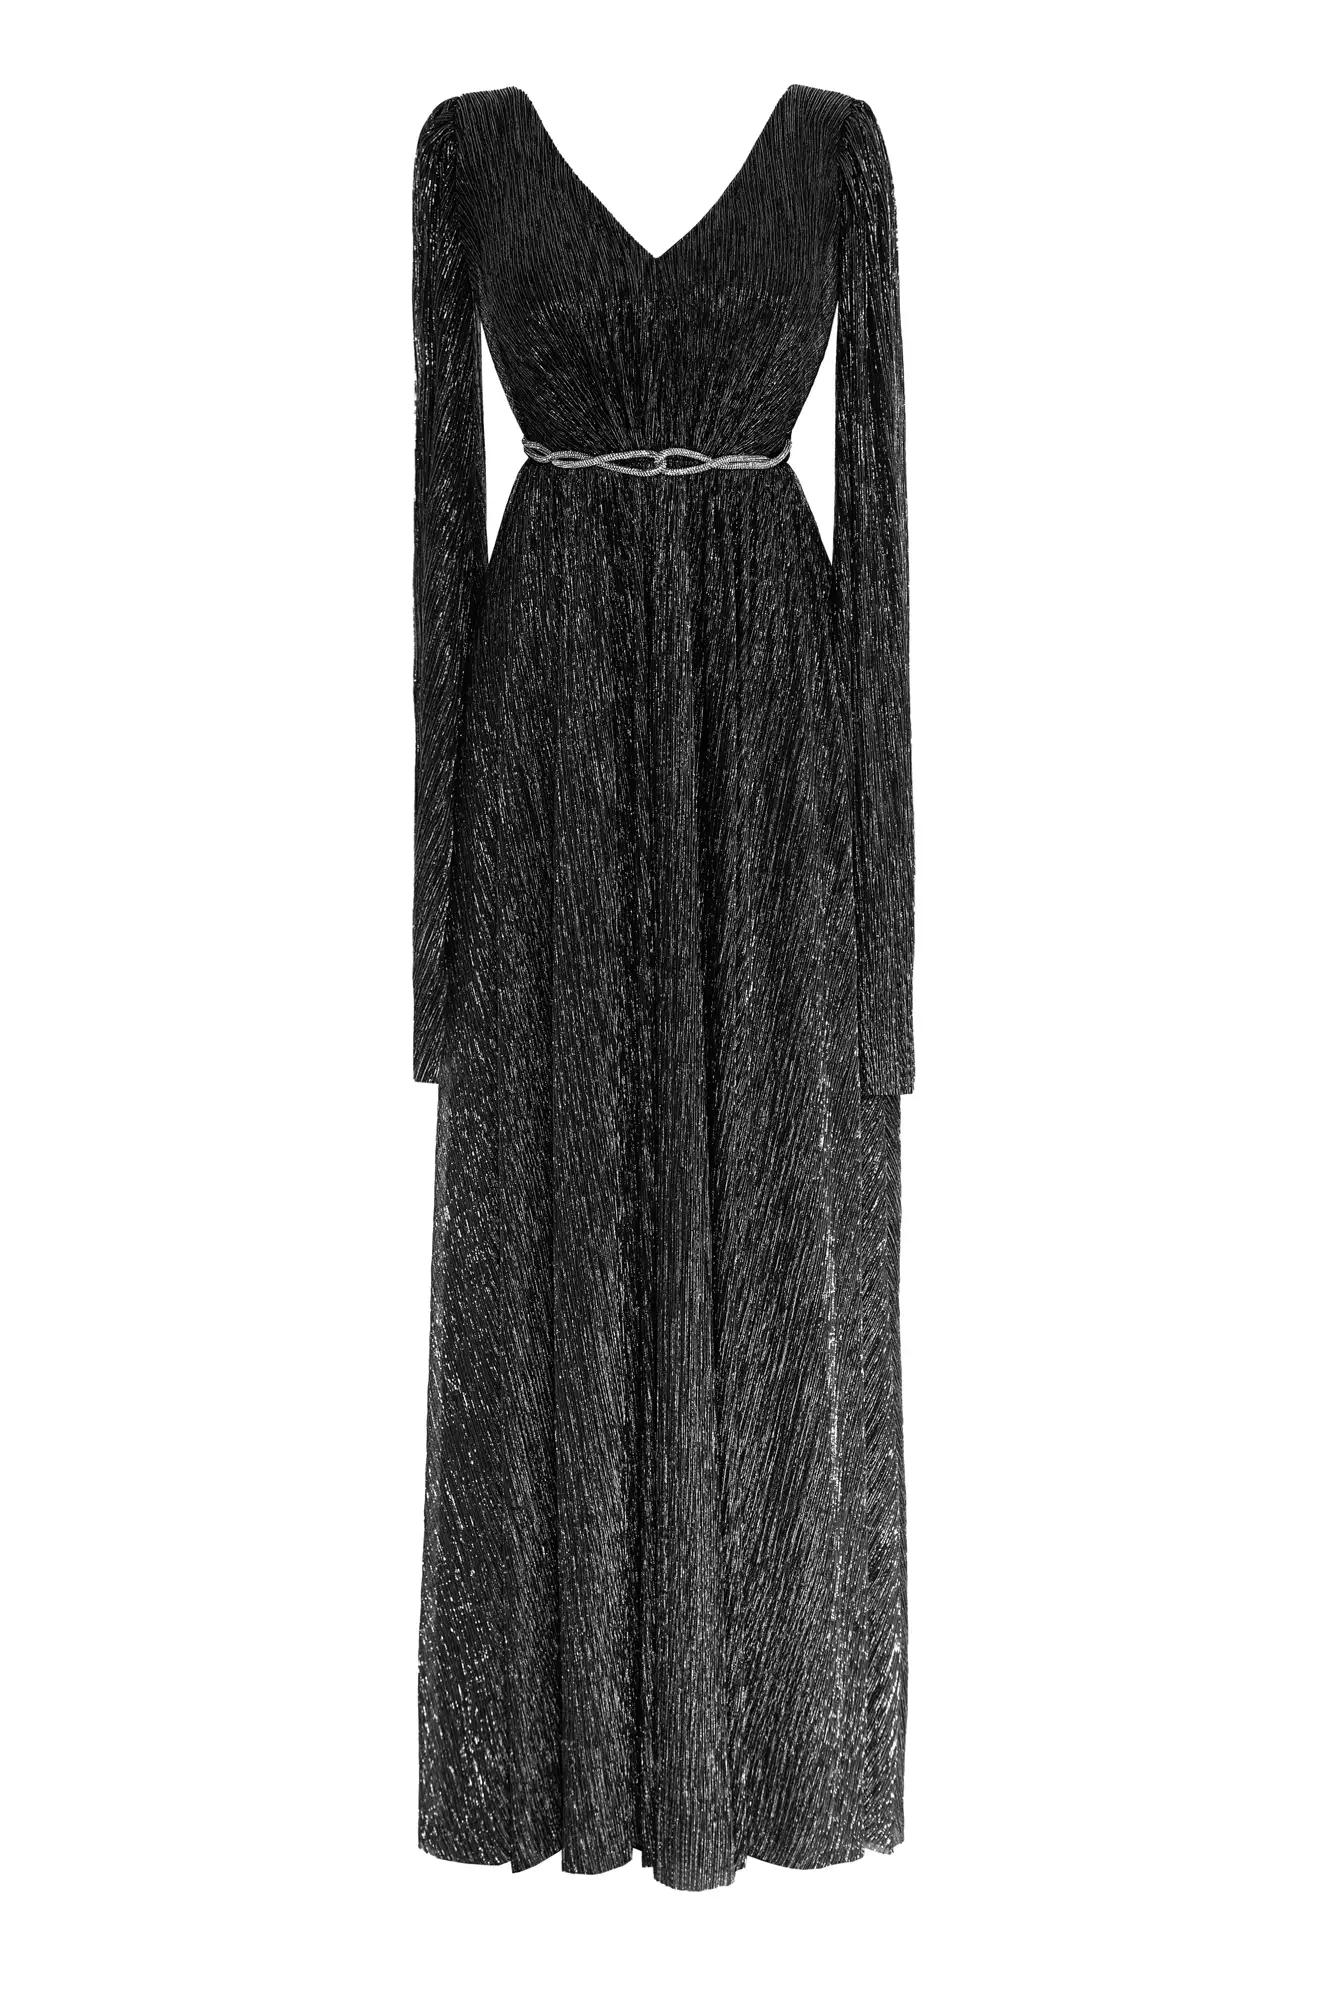 Siyah gümüş plus size moonlight long sleeve maxi dress